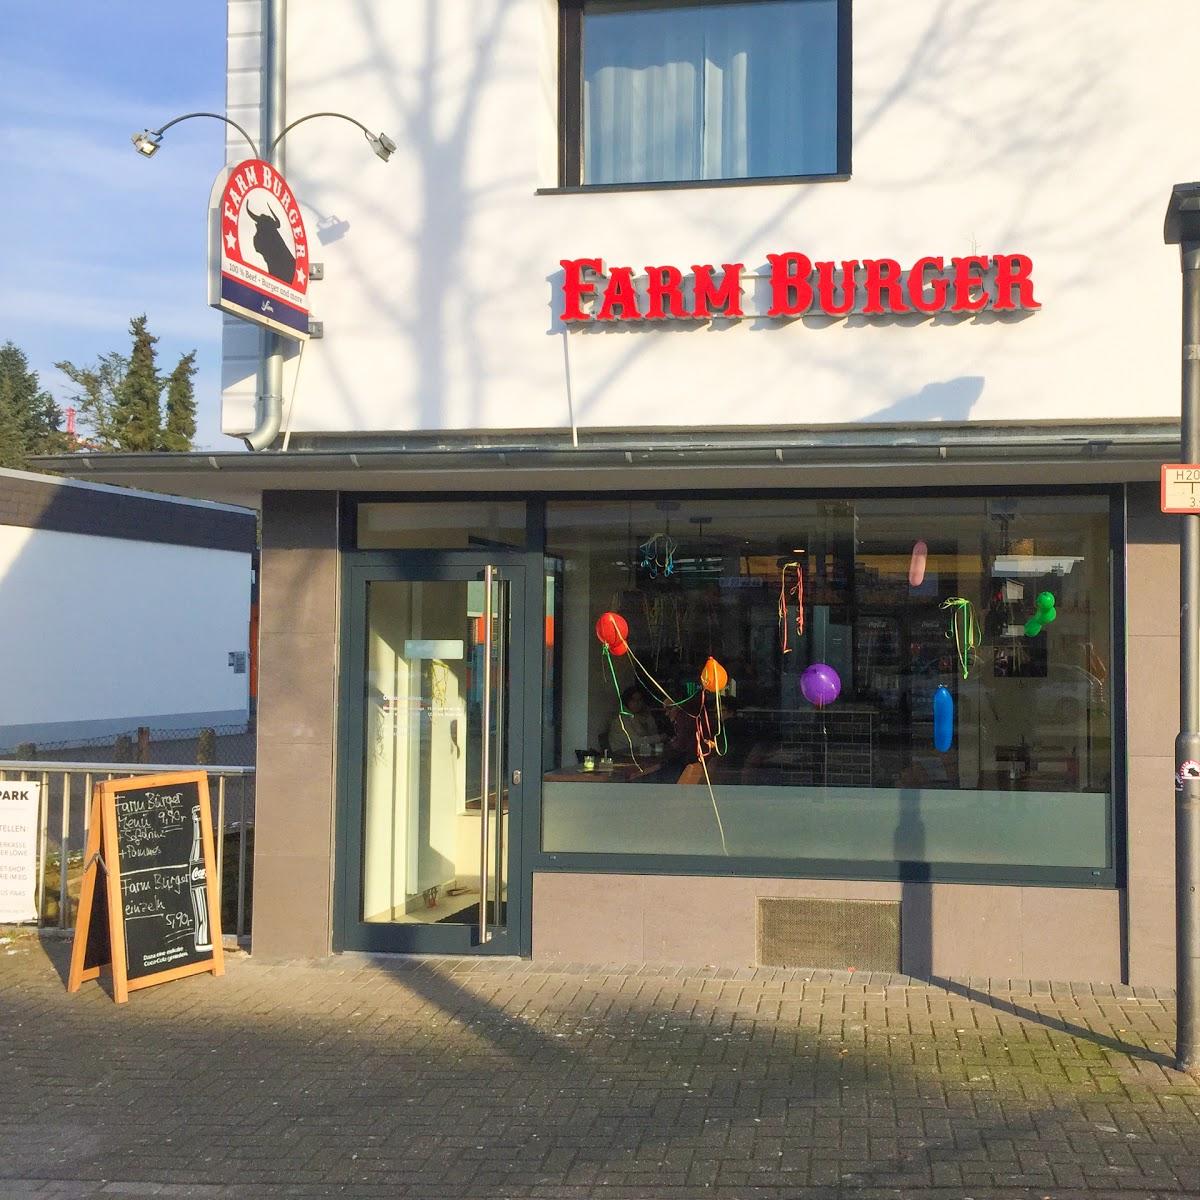 Restaurant "Farmburger -" in Bergisch Gladbach